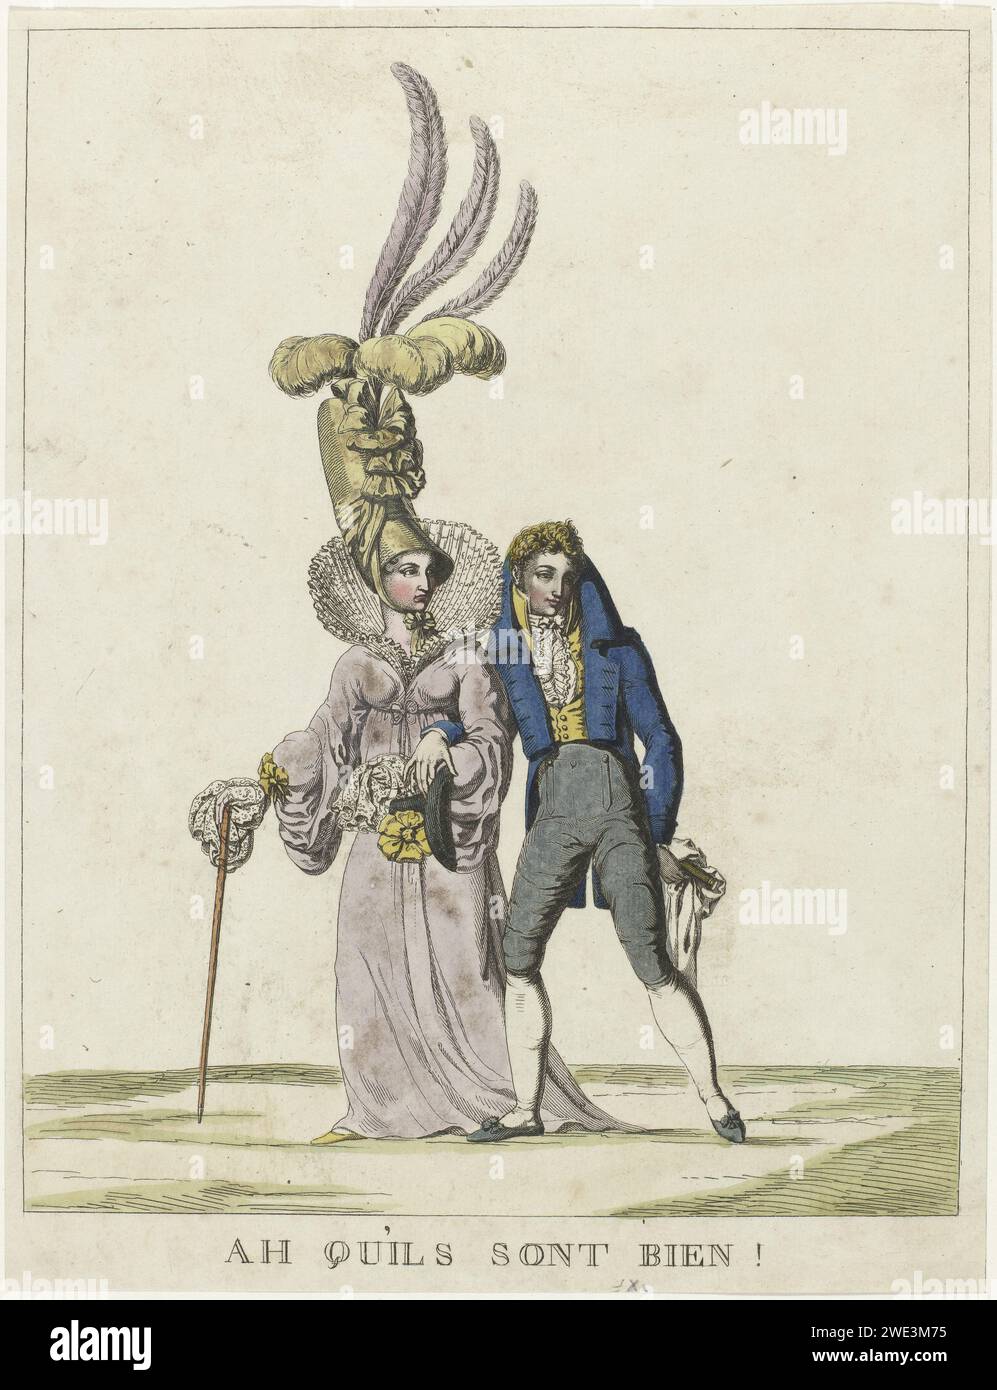 Ach, sie sind gut!, Anonym, 1817 Cartoon über die Mode von 1817. Afraised Walking Pärchen. Die Frau trägt ein Kleid mit hoher Taille und Abschleppung und einer hohen, aufrechten Falte, breiten Ärmeln mit transparenten Unterwasserstoffen, die über die Hände fallen. Der übermäßige Hut ist mit sehr langen Federn verziert. Gehstock in der Hand. Mann in einem Frak, Weste und Kniestütze. Cravate. Hemd mit Jabot. Hoher Hut mit Koch in der Hand. Flache Schuhe mit Schleife. Taschentuch und Fernglas (?) In der Hand. Frankreich Papier Gravur / Ätzen Mode Platten. Kopfbedeckung: Hut (+ Damenbekleidung). Kleid, Kleid (+ Damen c Stockfoto